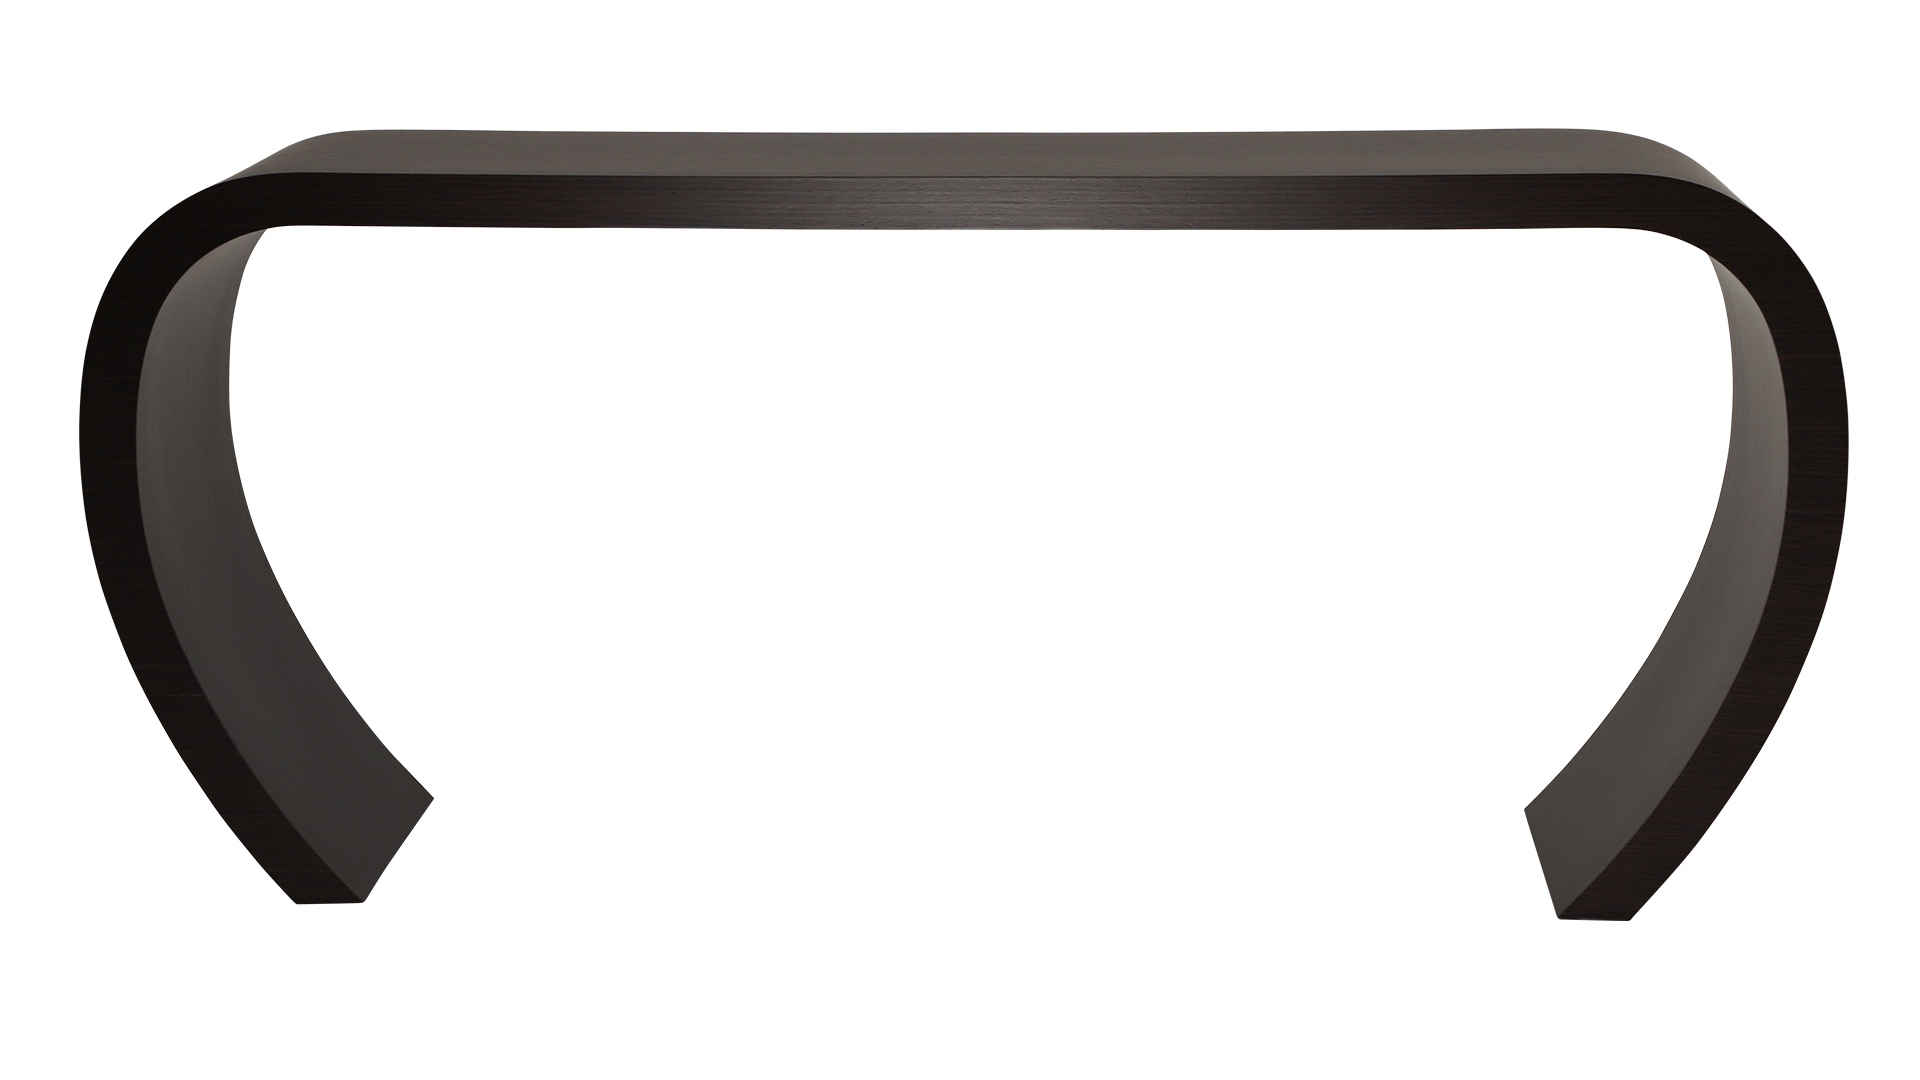 Das Sideboard Sidebow überzeugt mit seiner besonderen Form. Gefertigt wurde das Sideboard aus Echtholzfurnier. Die Farbe ist Wenge. Es ist ein Produkt der Marke Jan Kurtz und hat eine Breite von 123 cm.